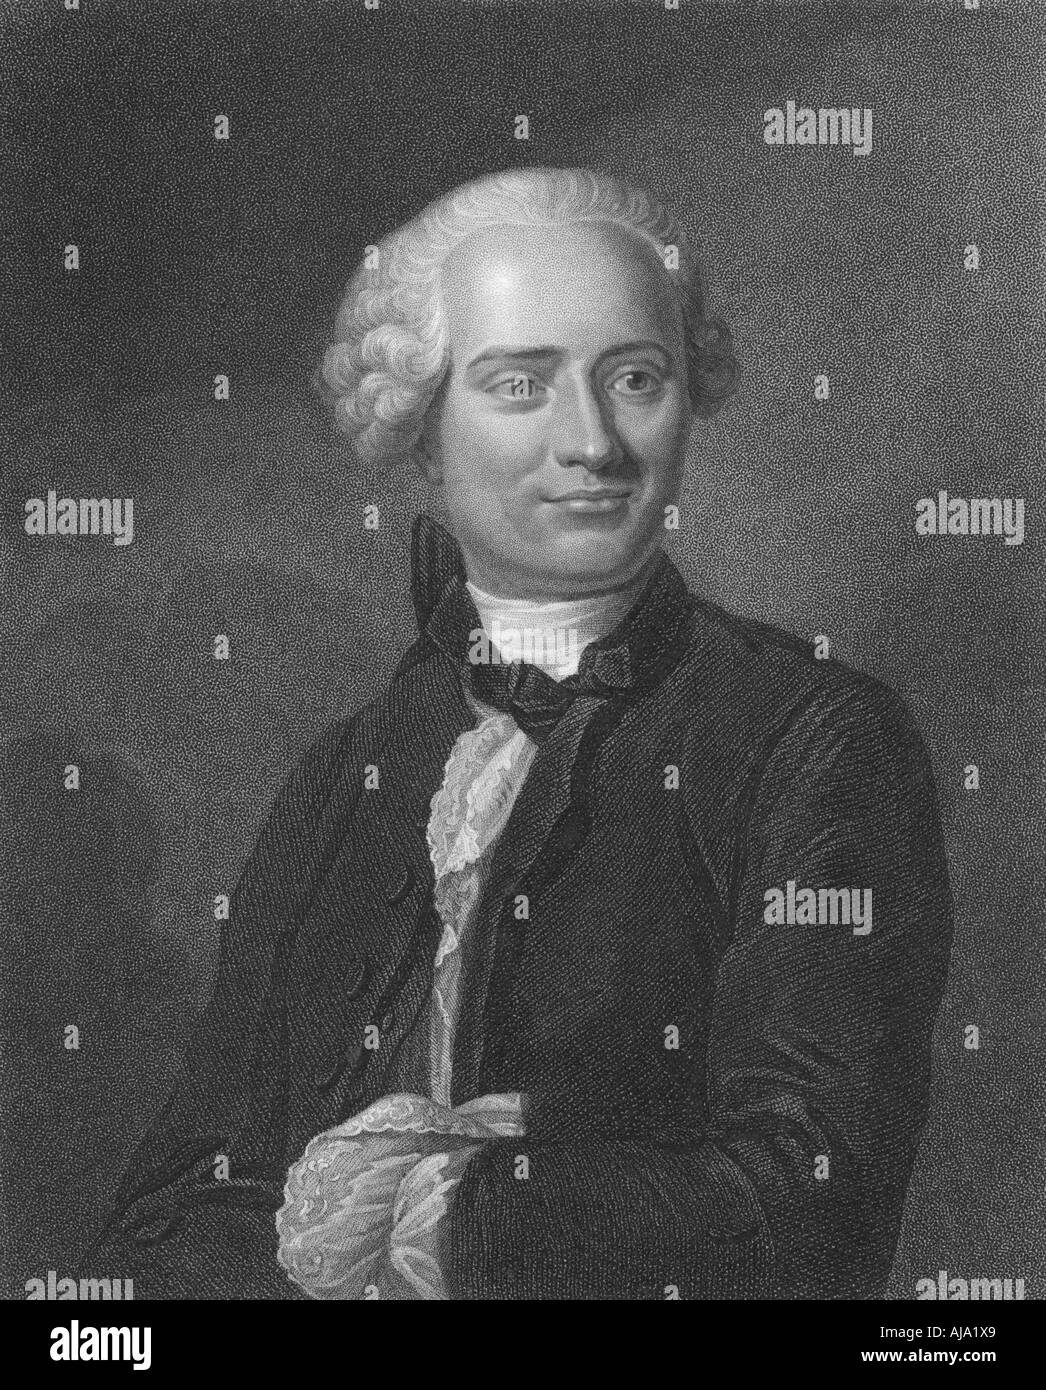 Jean le Rond d'Alembert, siglo xviii filósofo y matemático francés, 1834. Artista: Desconocido Foto de stock